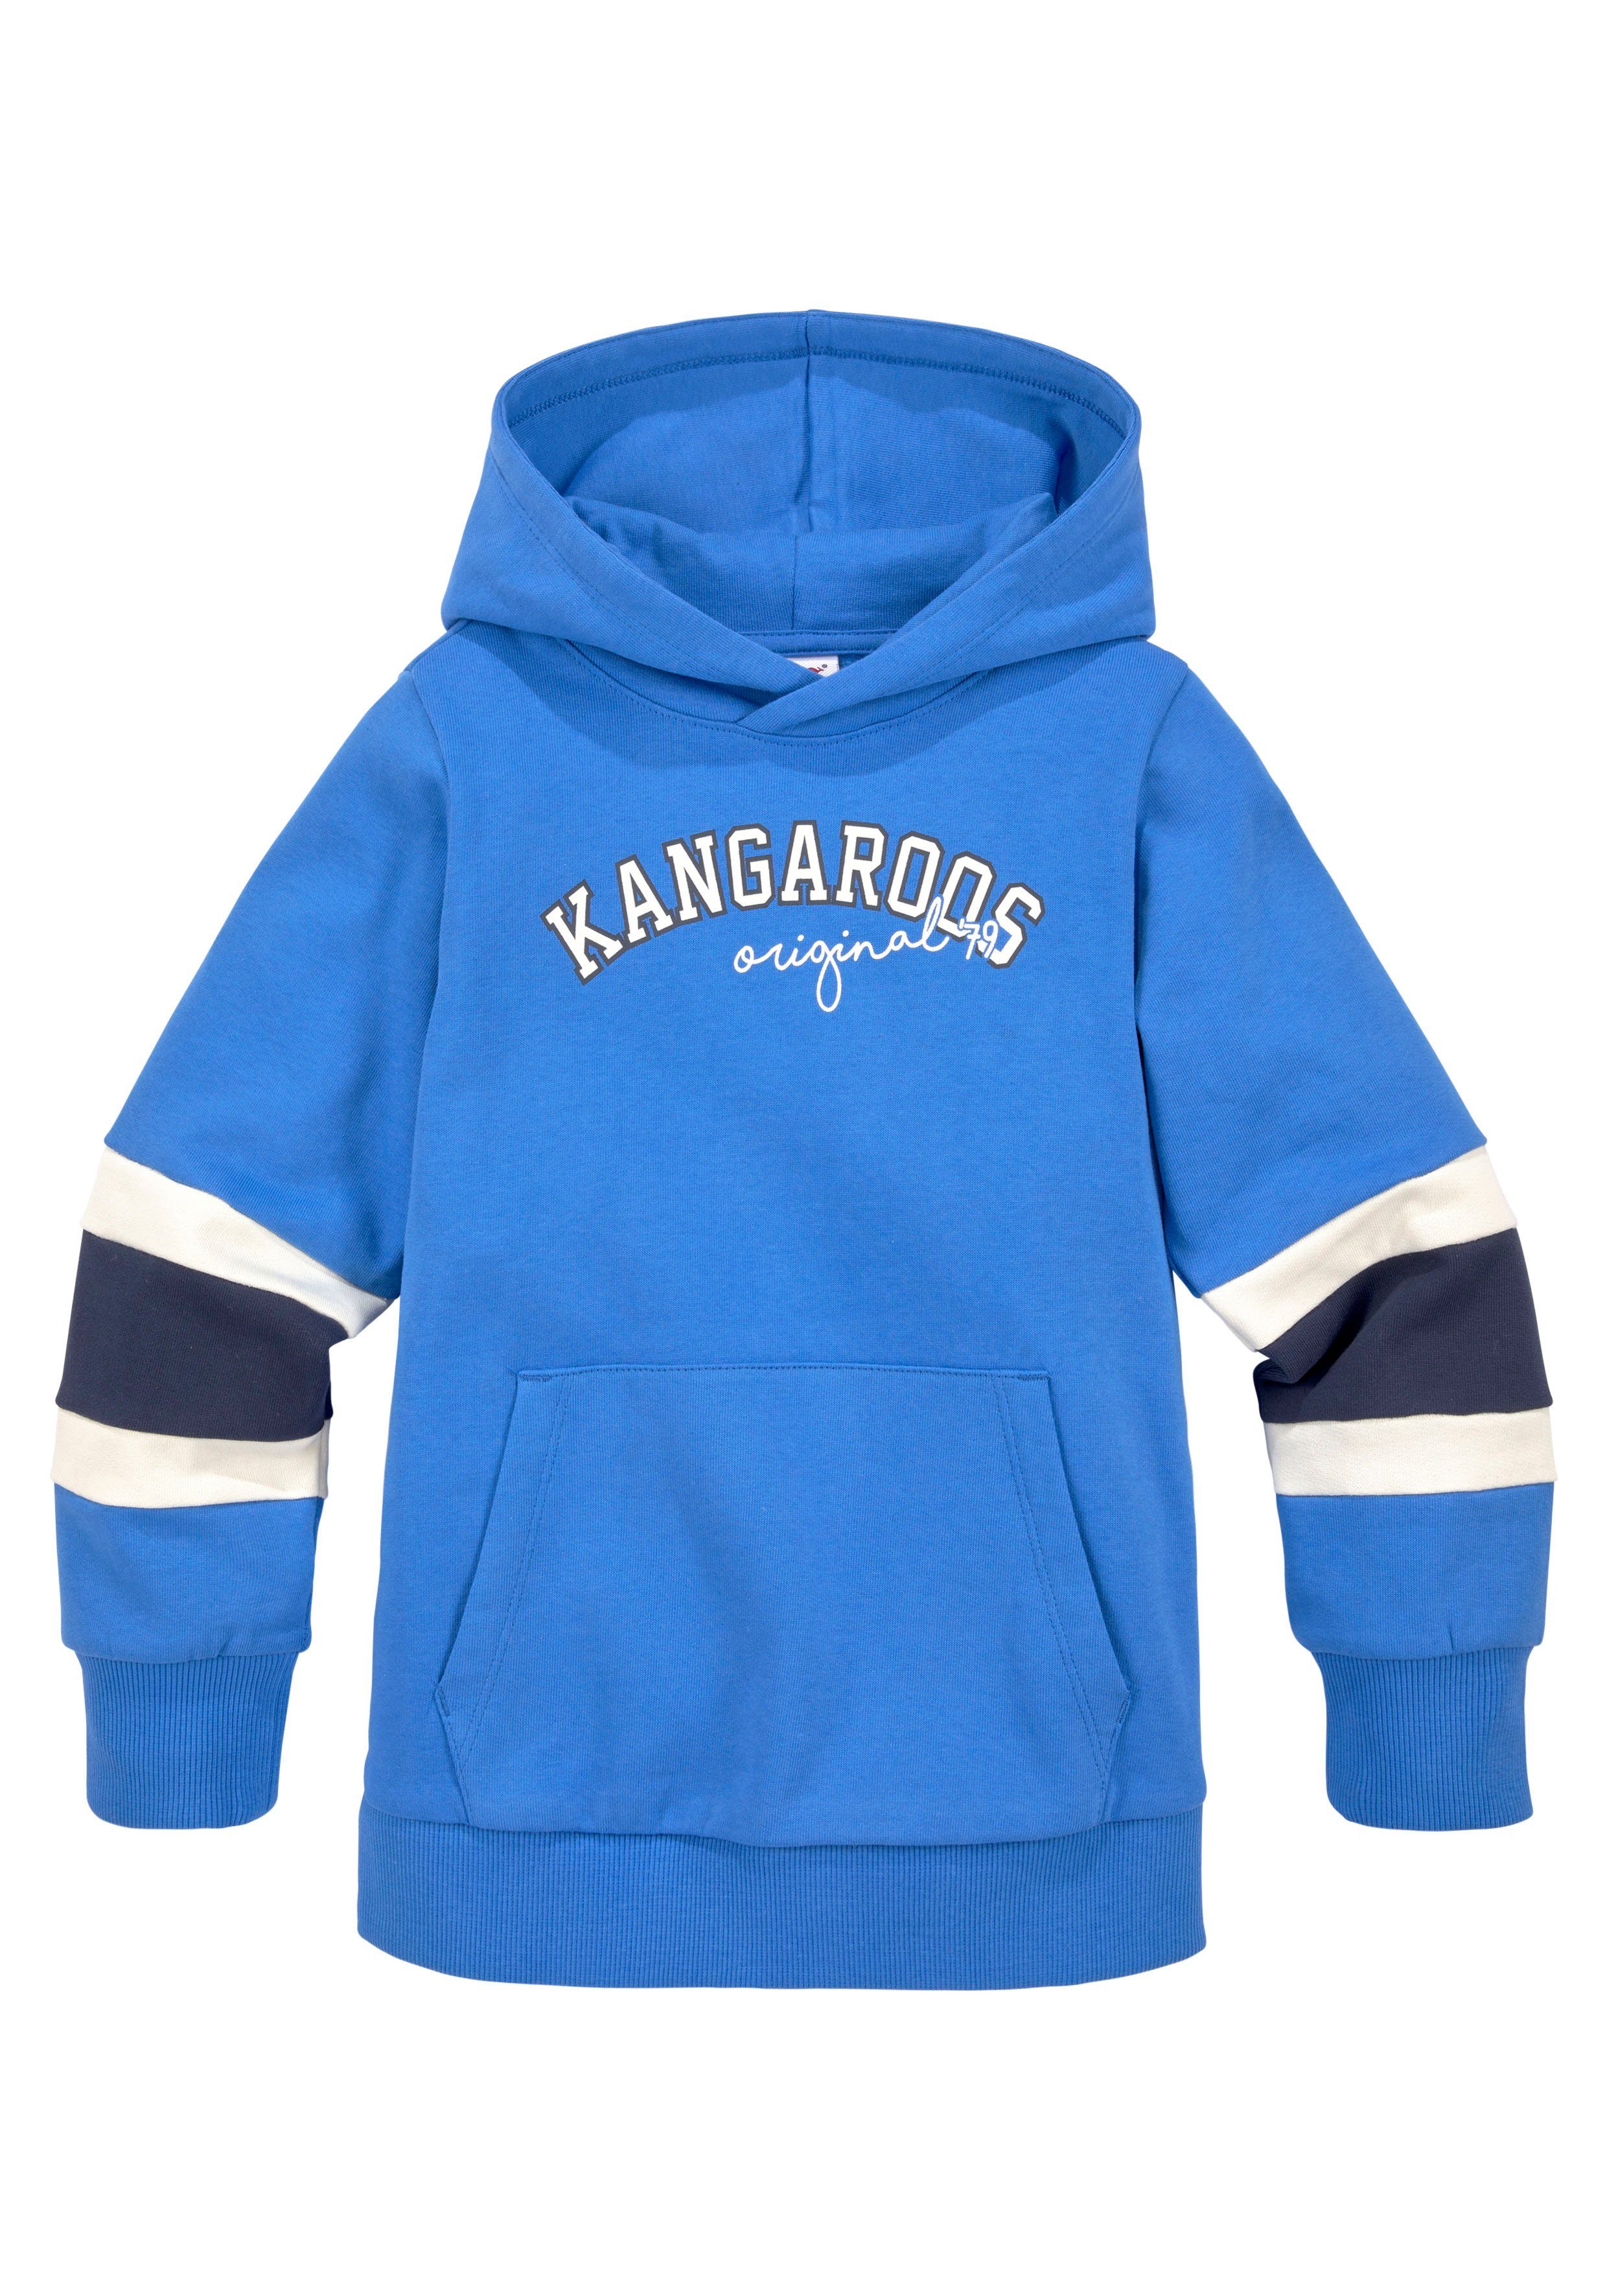 KangaROOS Ärmeln, für Kapuzensweatshirt Streifen mit den Mini Jungen an Colorblocking,